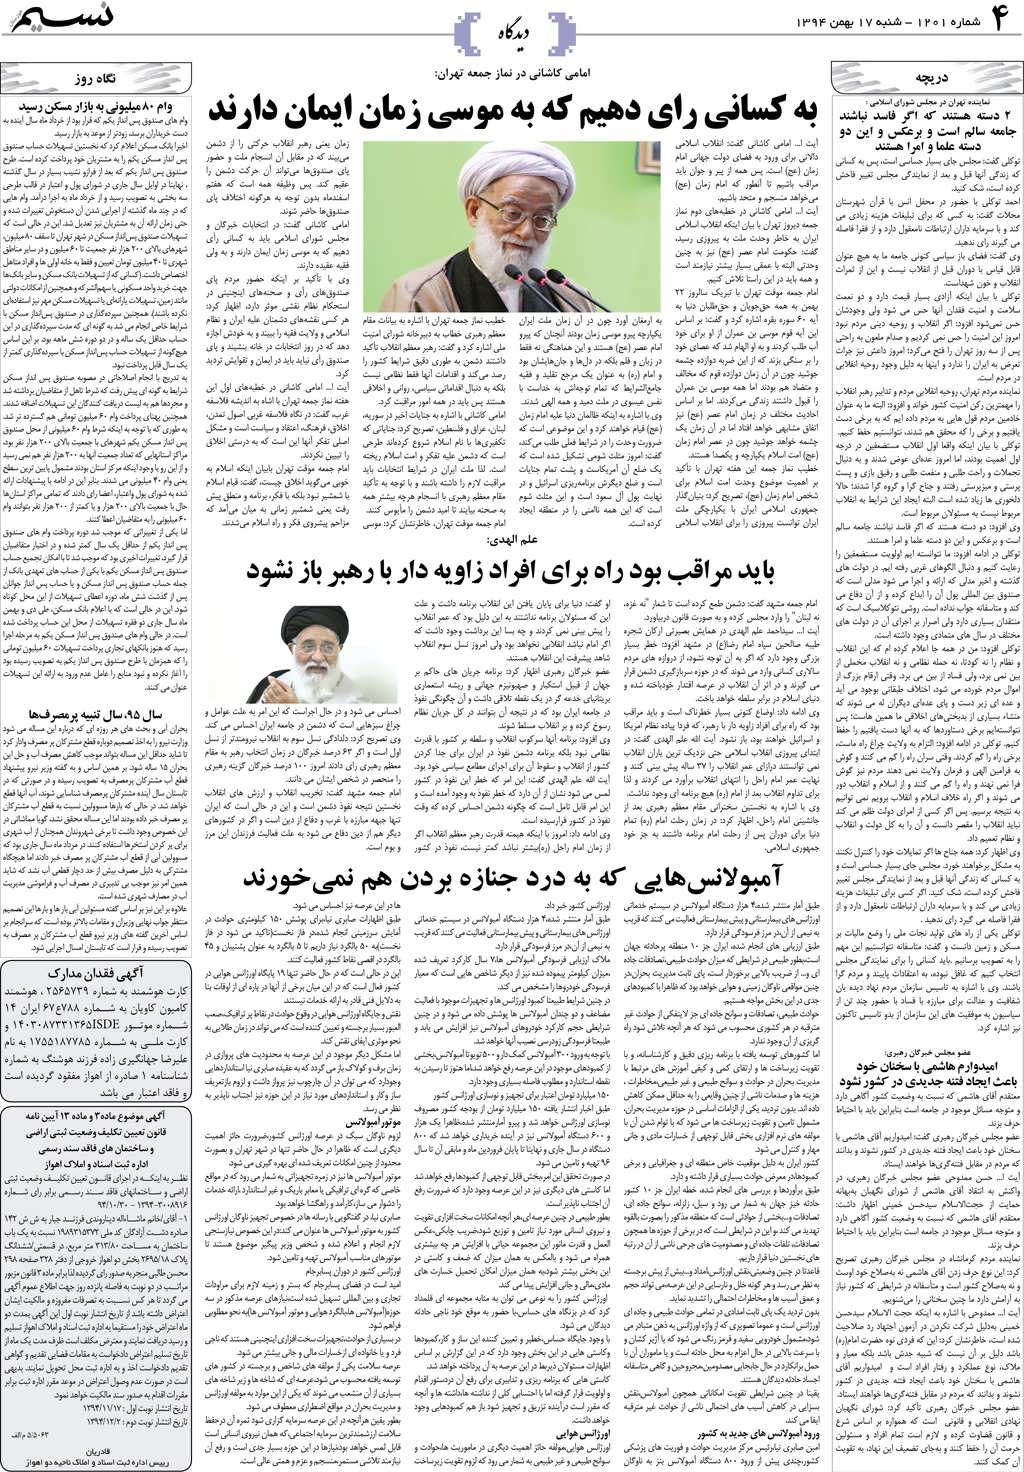 صفحه دیدگاه روزنامه نسیم شماره 1201